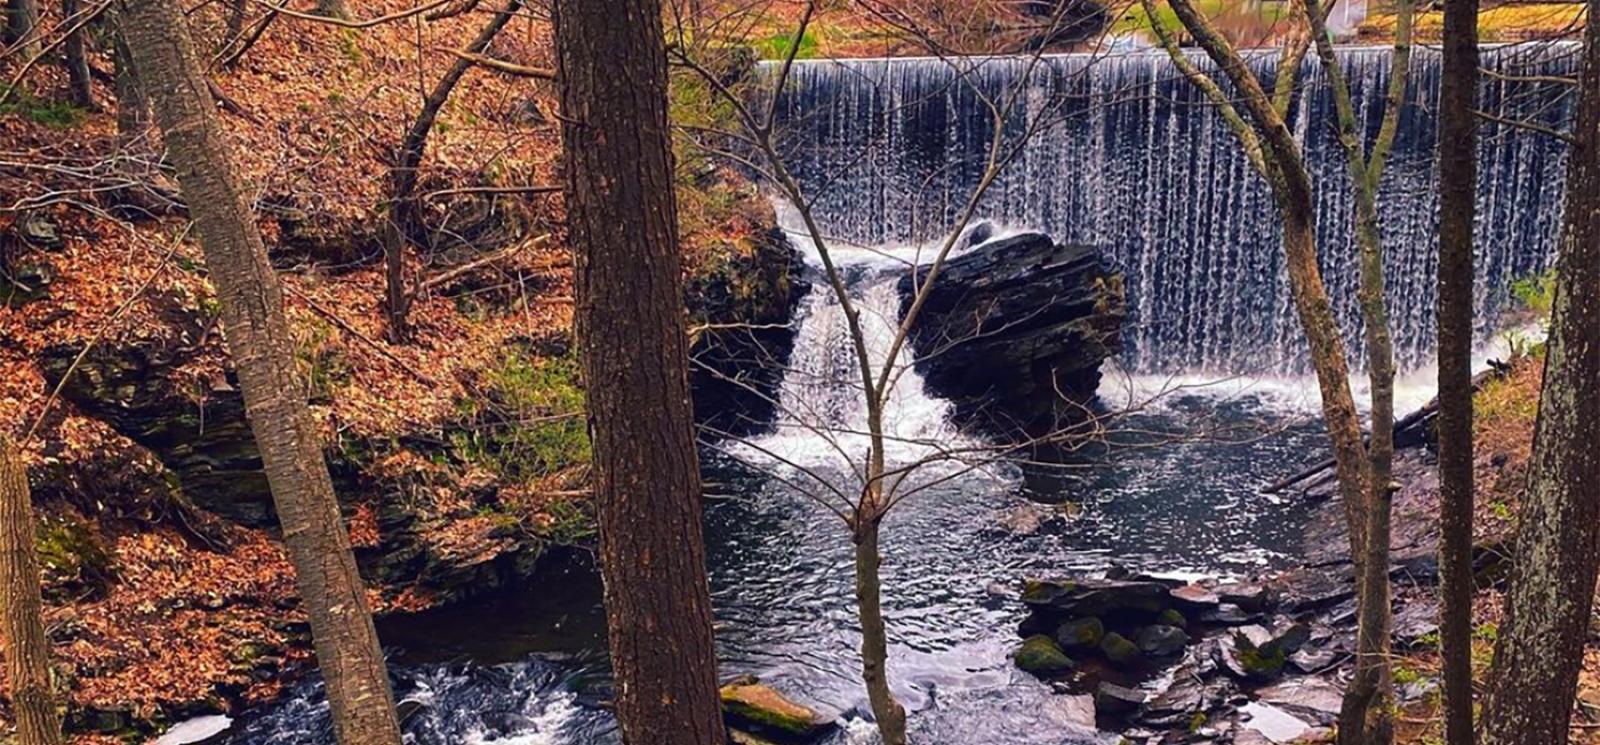 A waterfall in the woods near a bridge (Instagram@deppinlove)